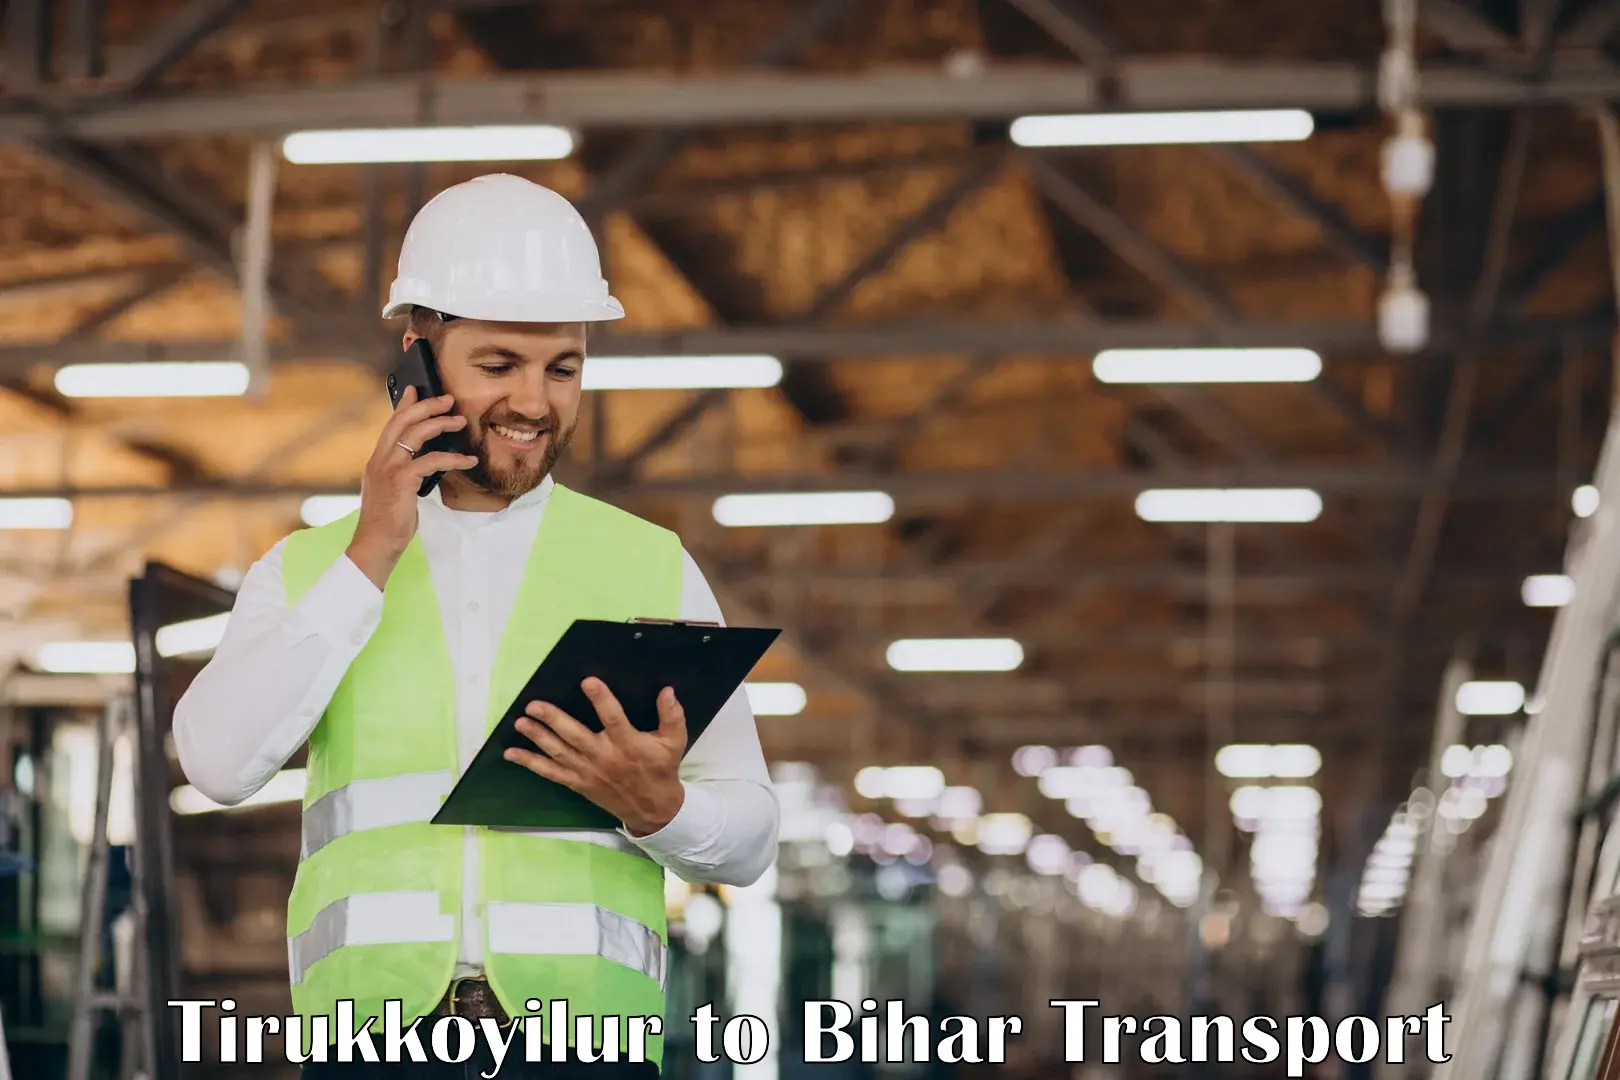 Commercial transport service Tirukkoyilur to Bharwara